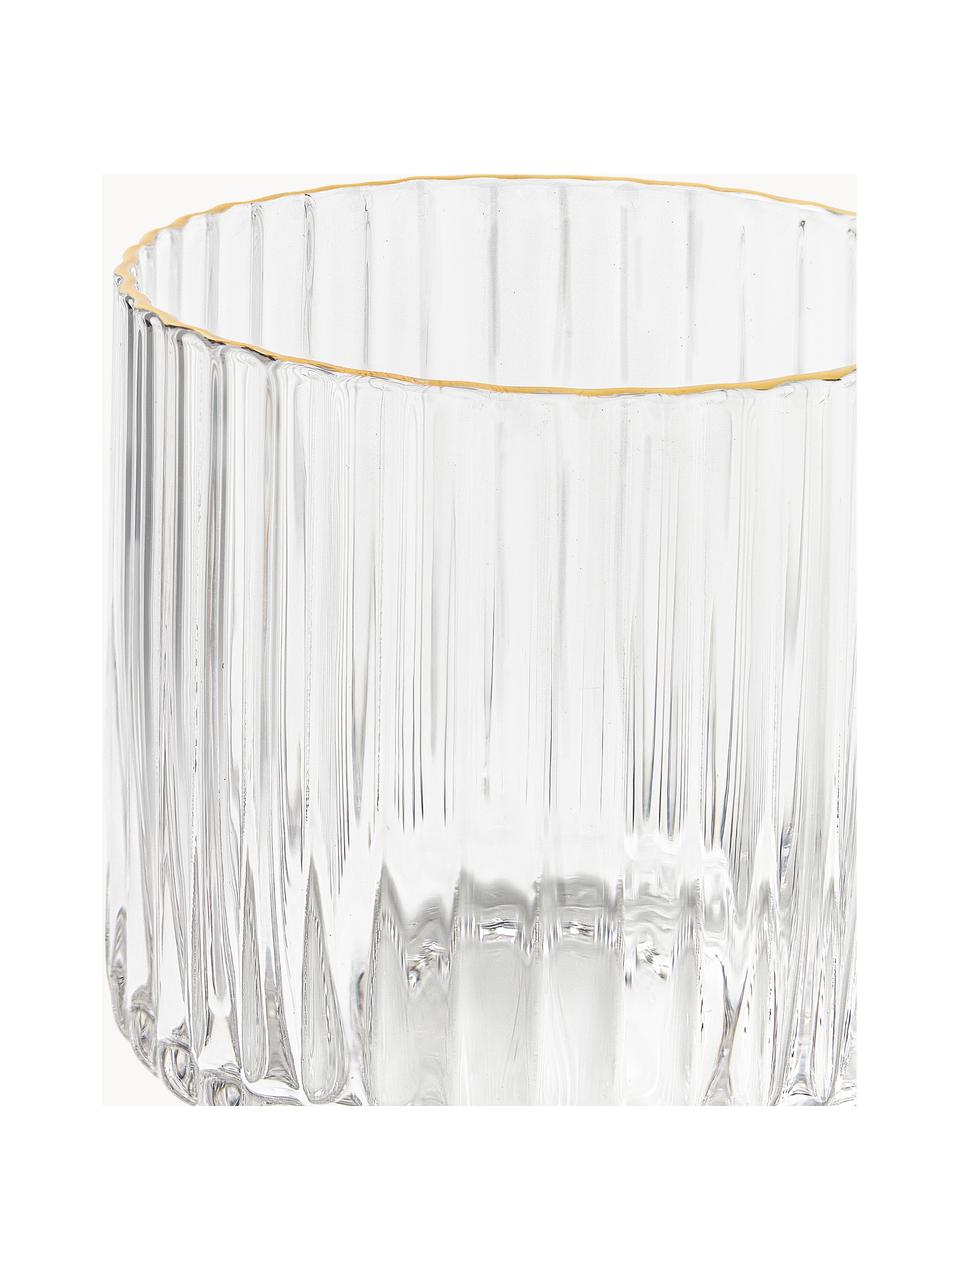 Ručně foukané sklenice Aleo, 4 ks, Sklo, Transparentní, zlatá, Ø 8 cm, V 8 cm, 320 ml